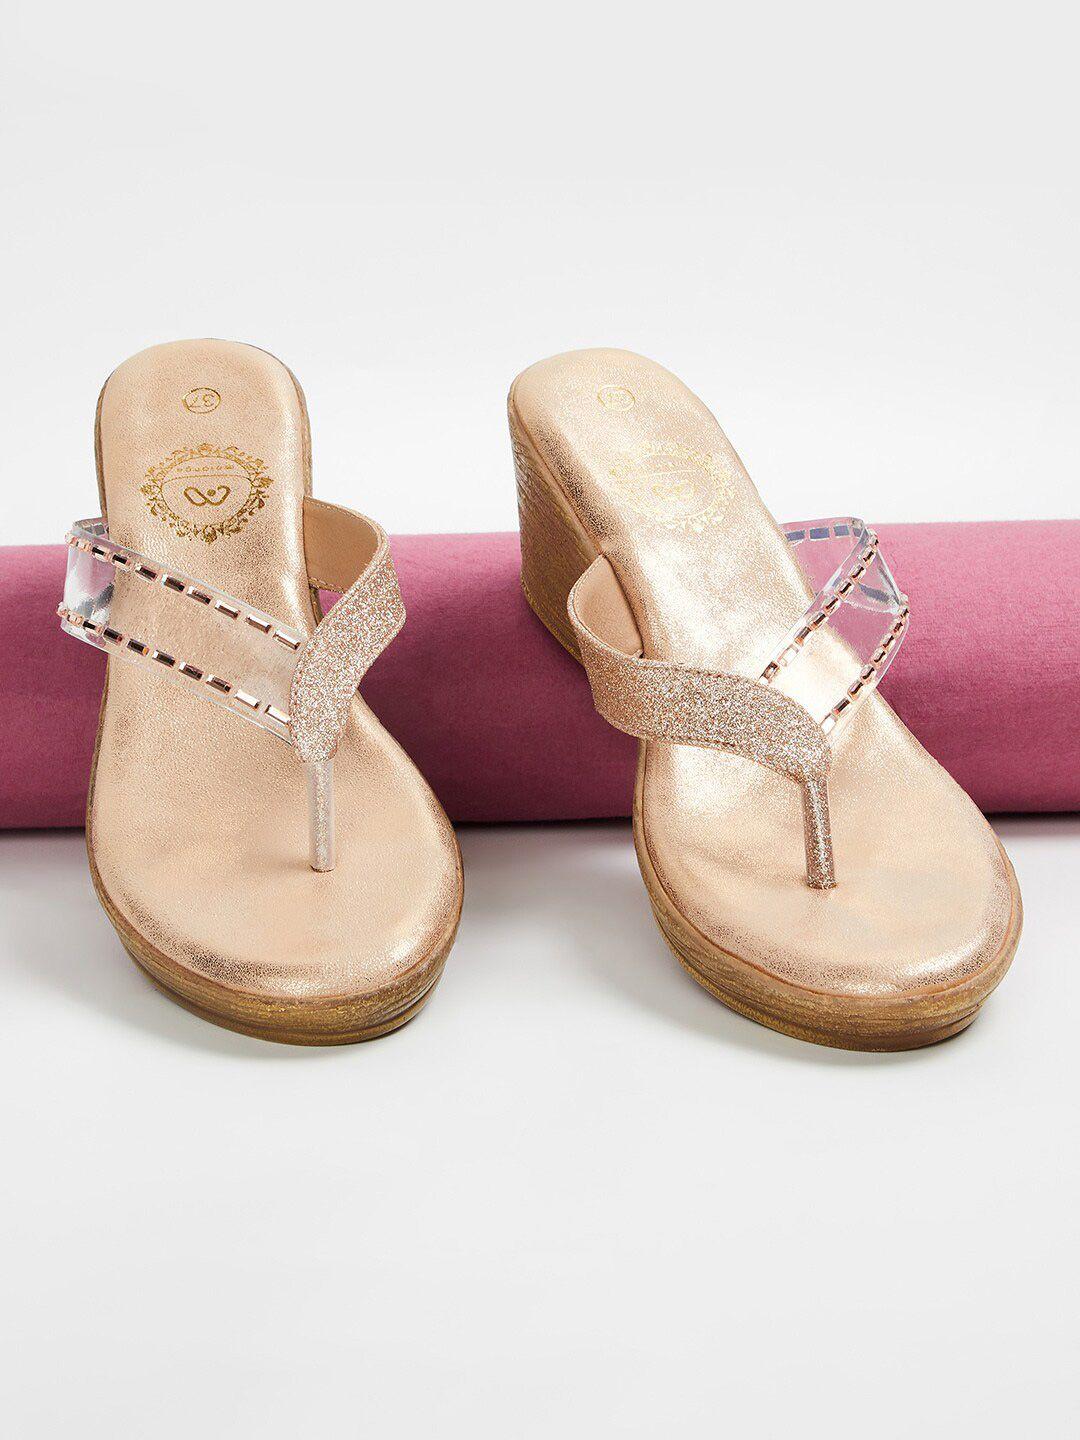 melange by lifestyle embellished comfort heels